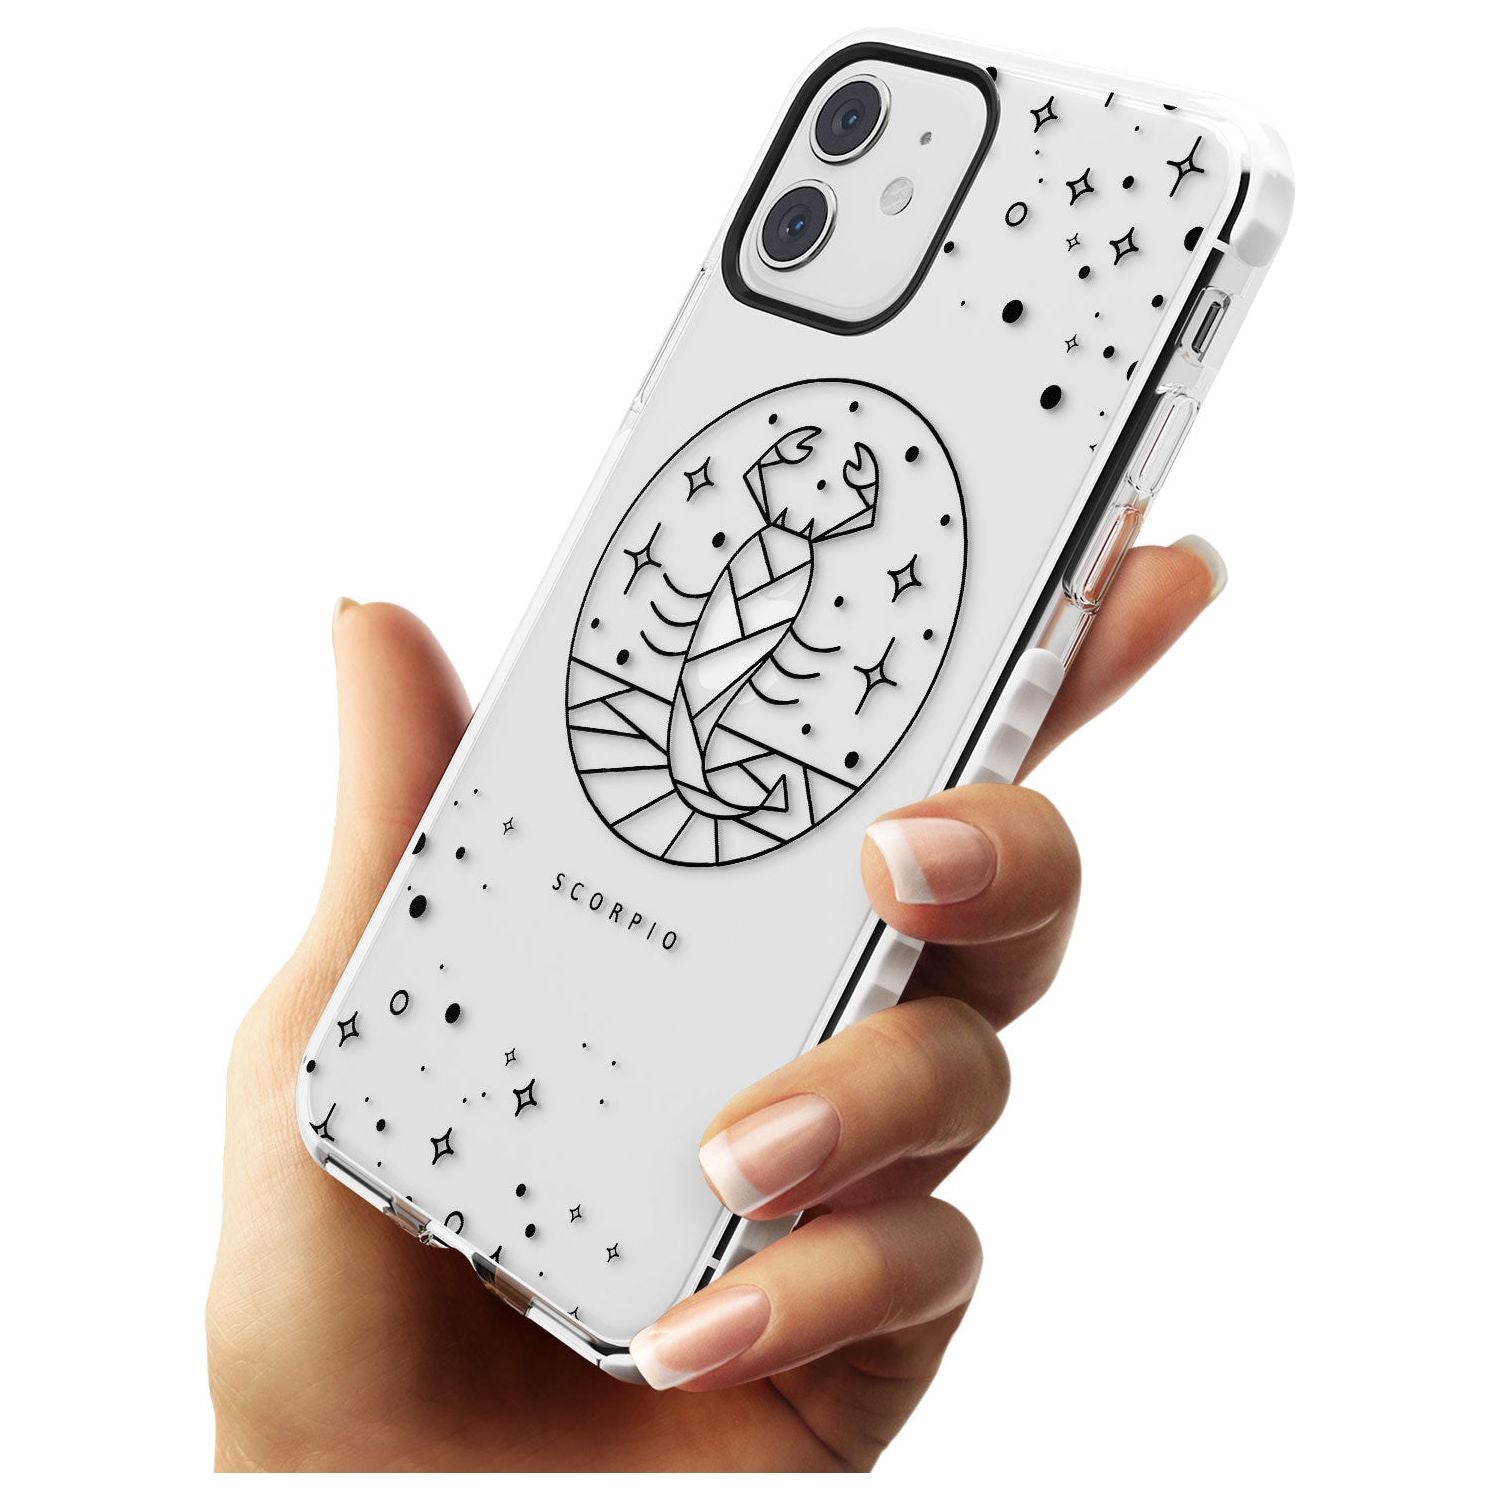 Scorpio Emblem - Transparent Design Impact Phone Case for iPhone 11